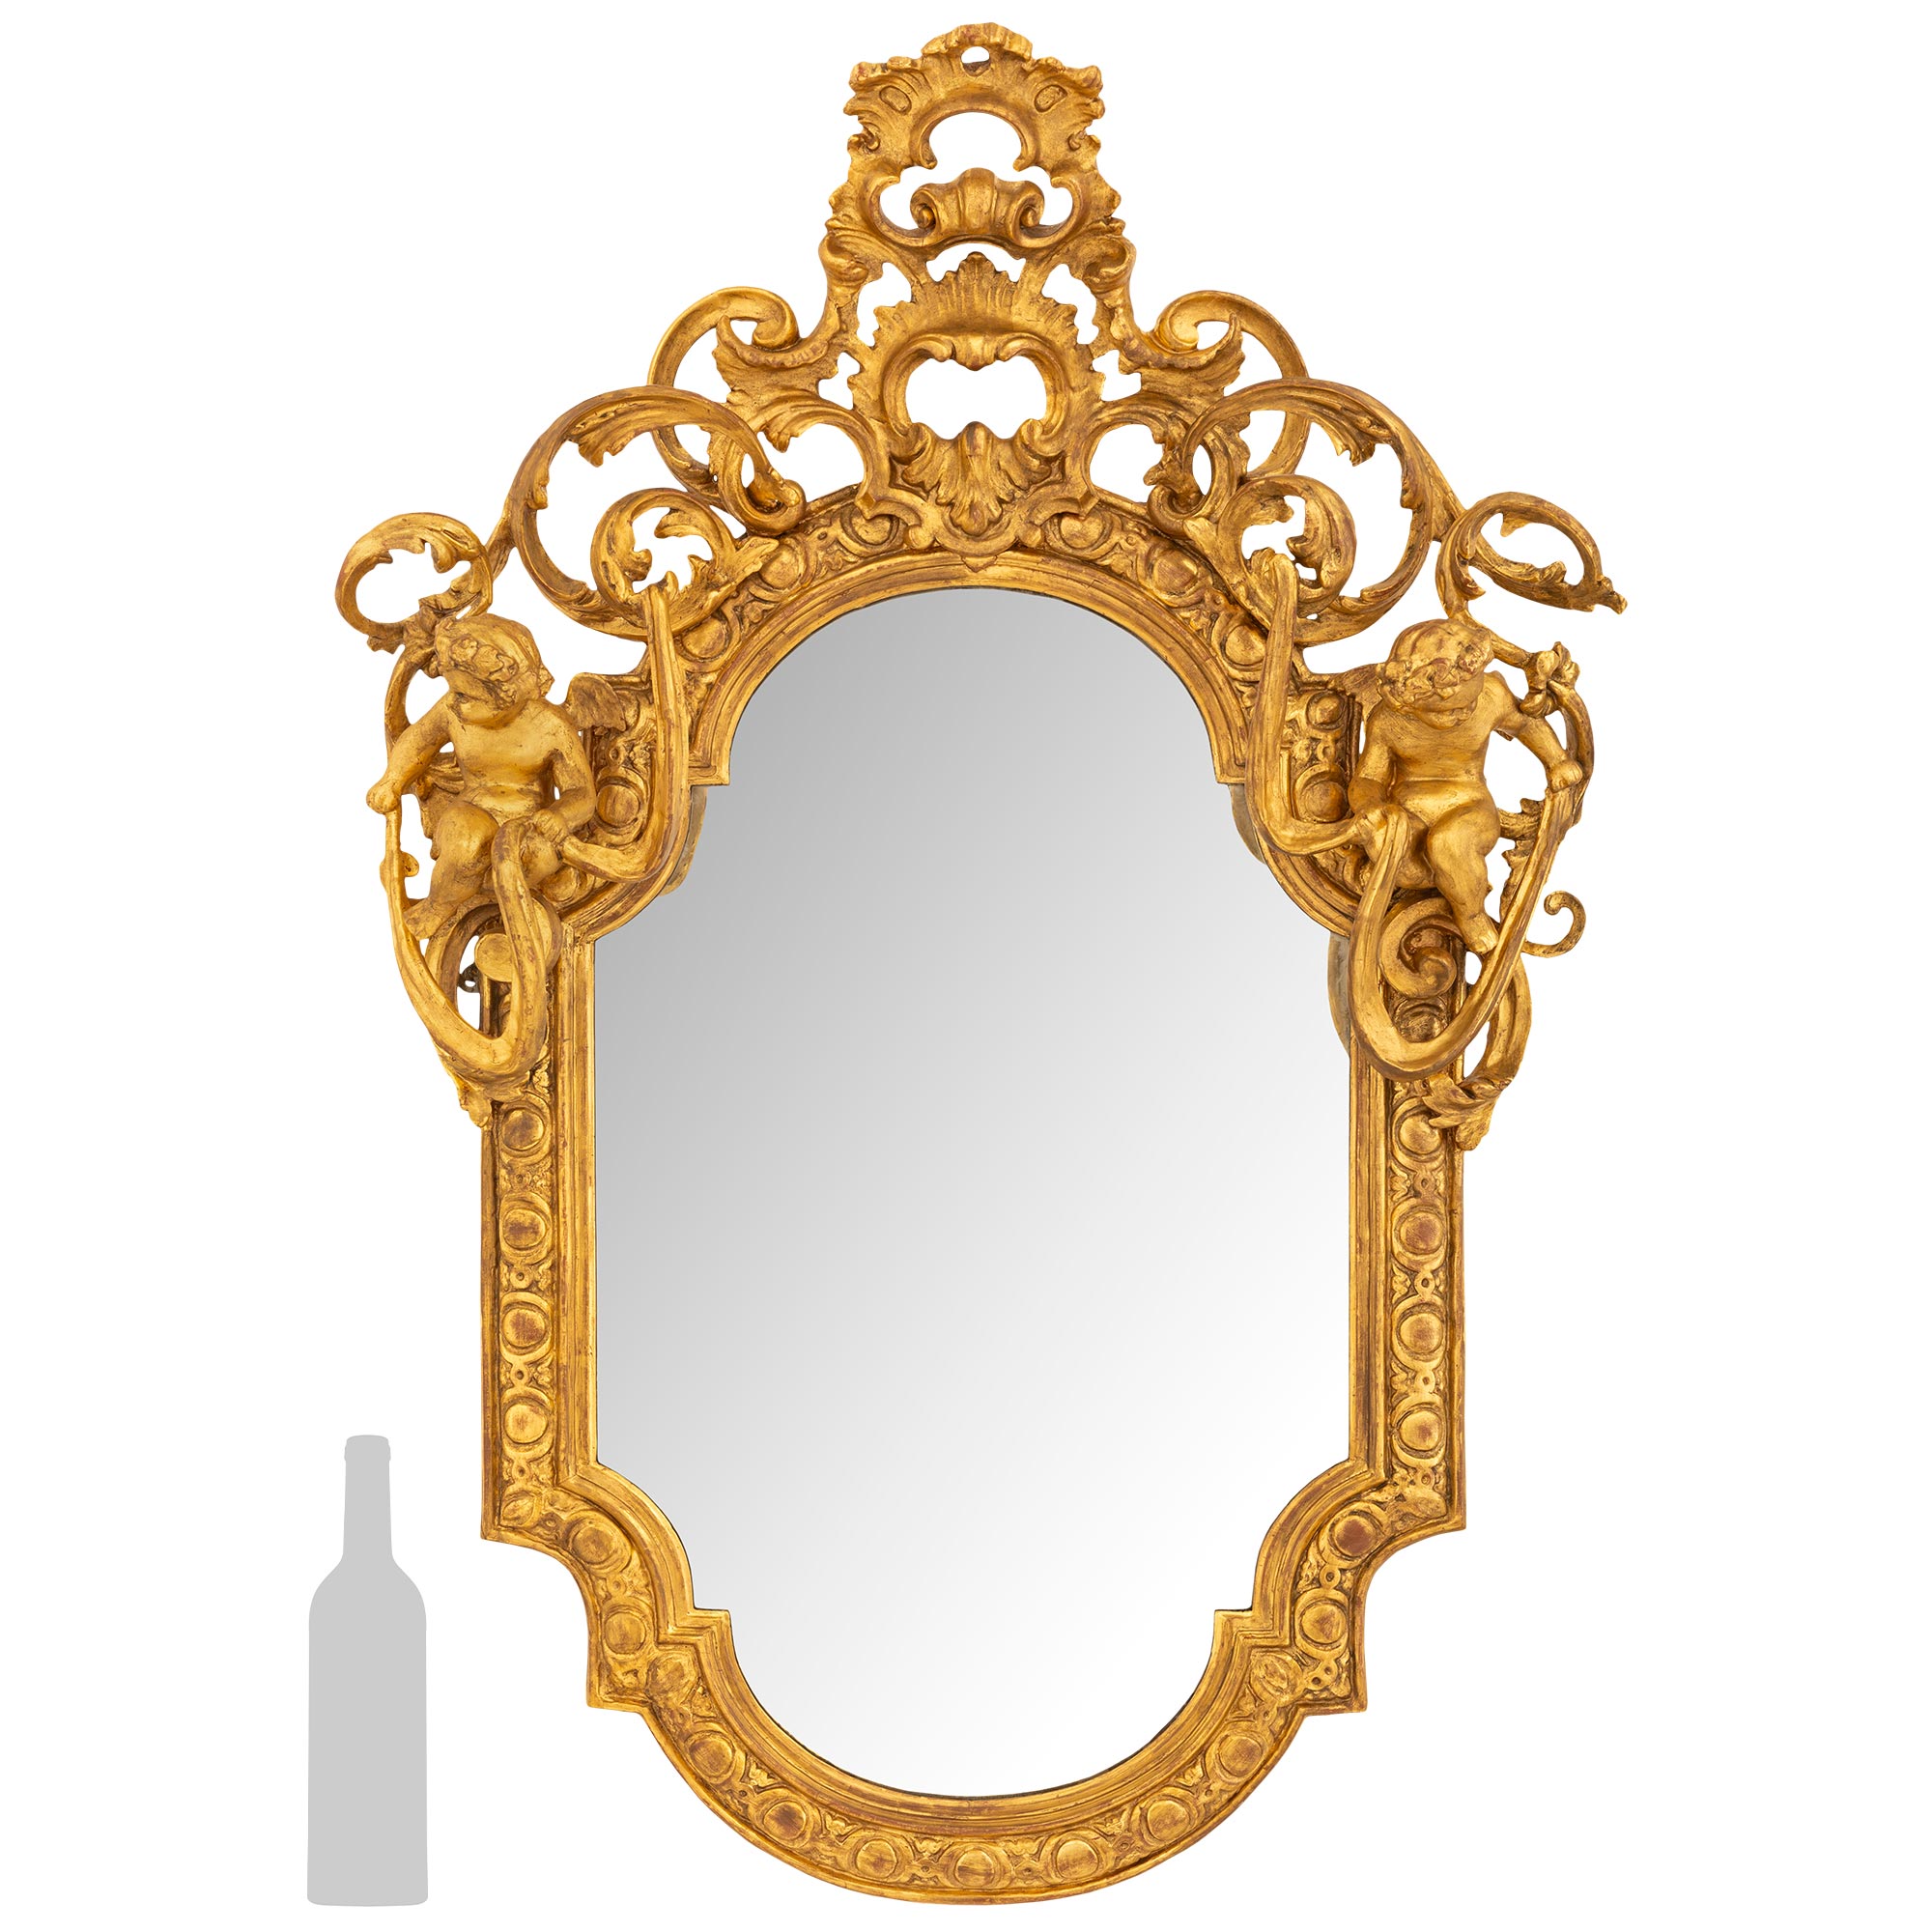  Miroir italien en bois doré du XVIIIe siècle